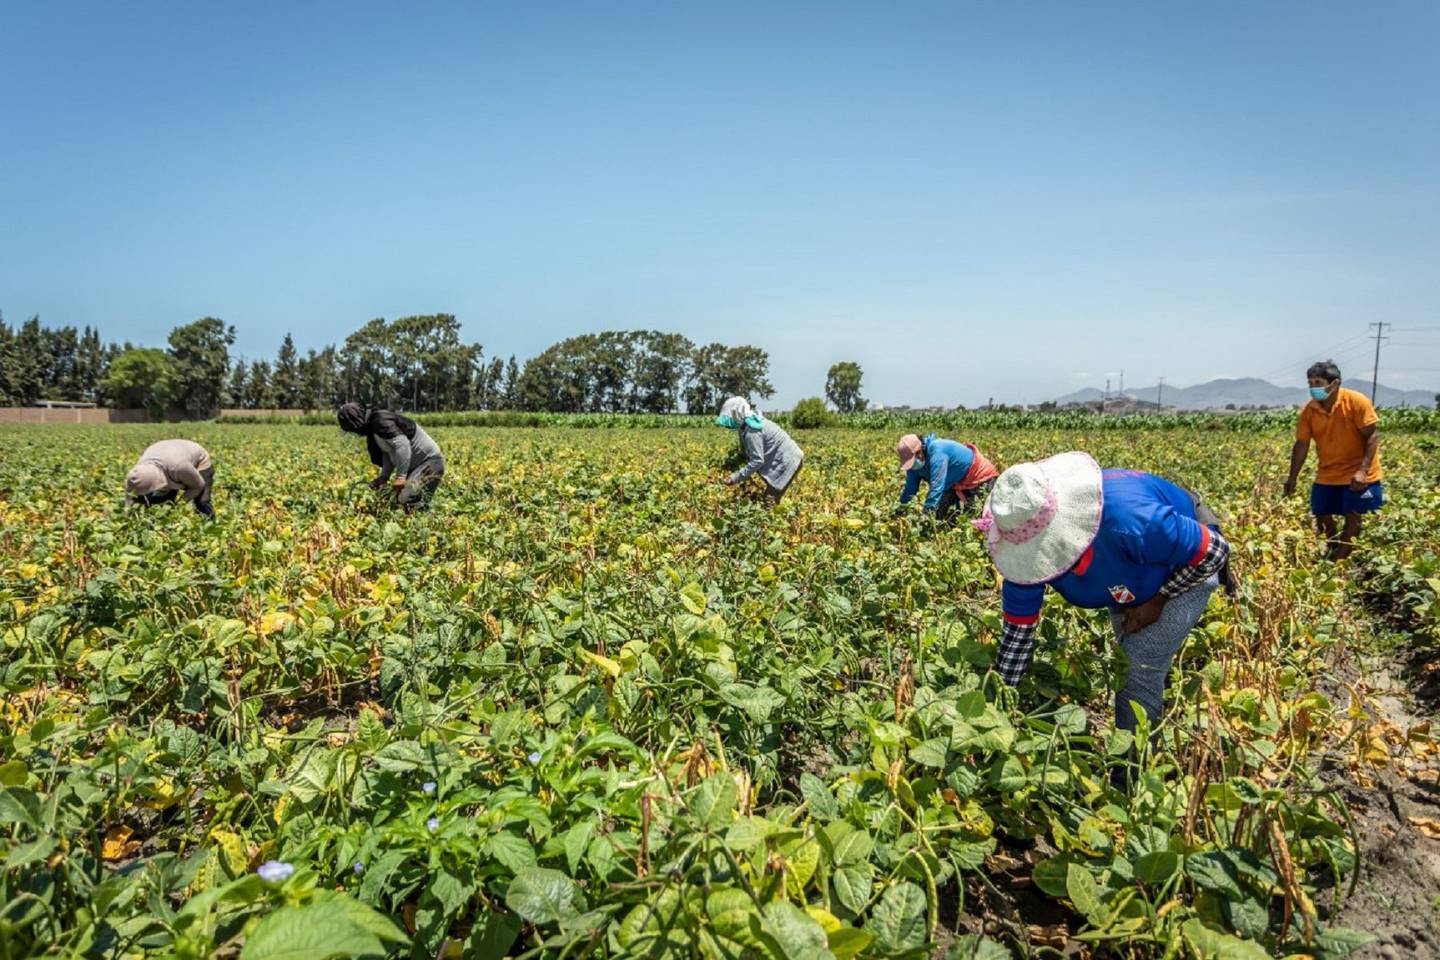 Segunda reforma agraria: Castillo anuncia ajuste de franja de precios en sector agro.dfd